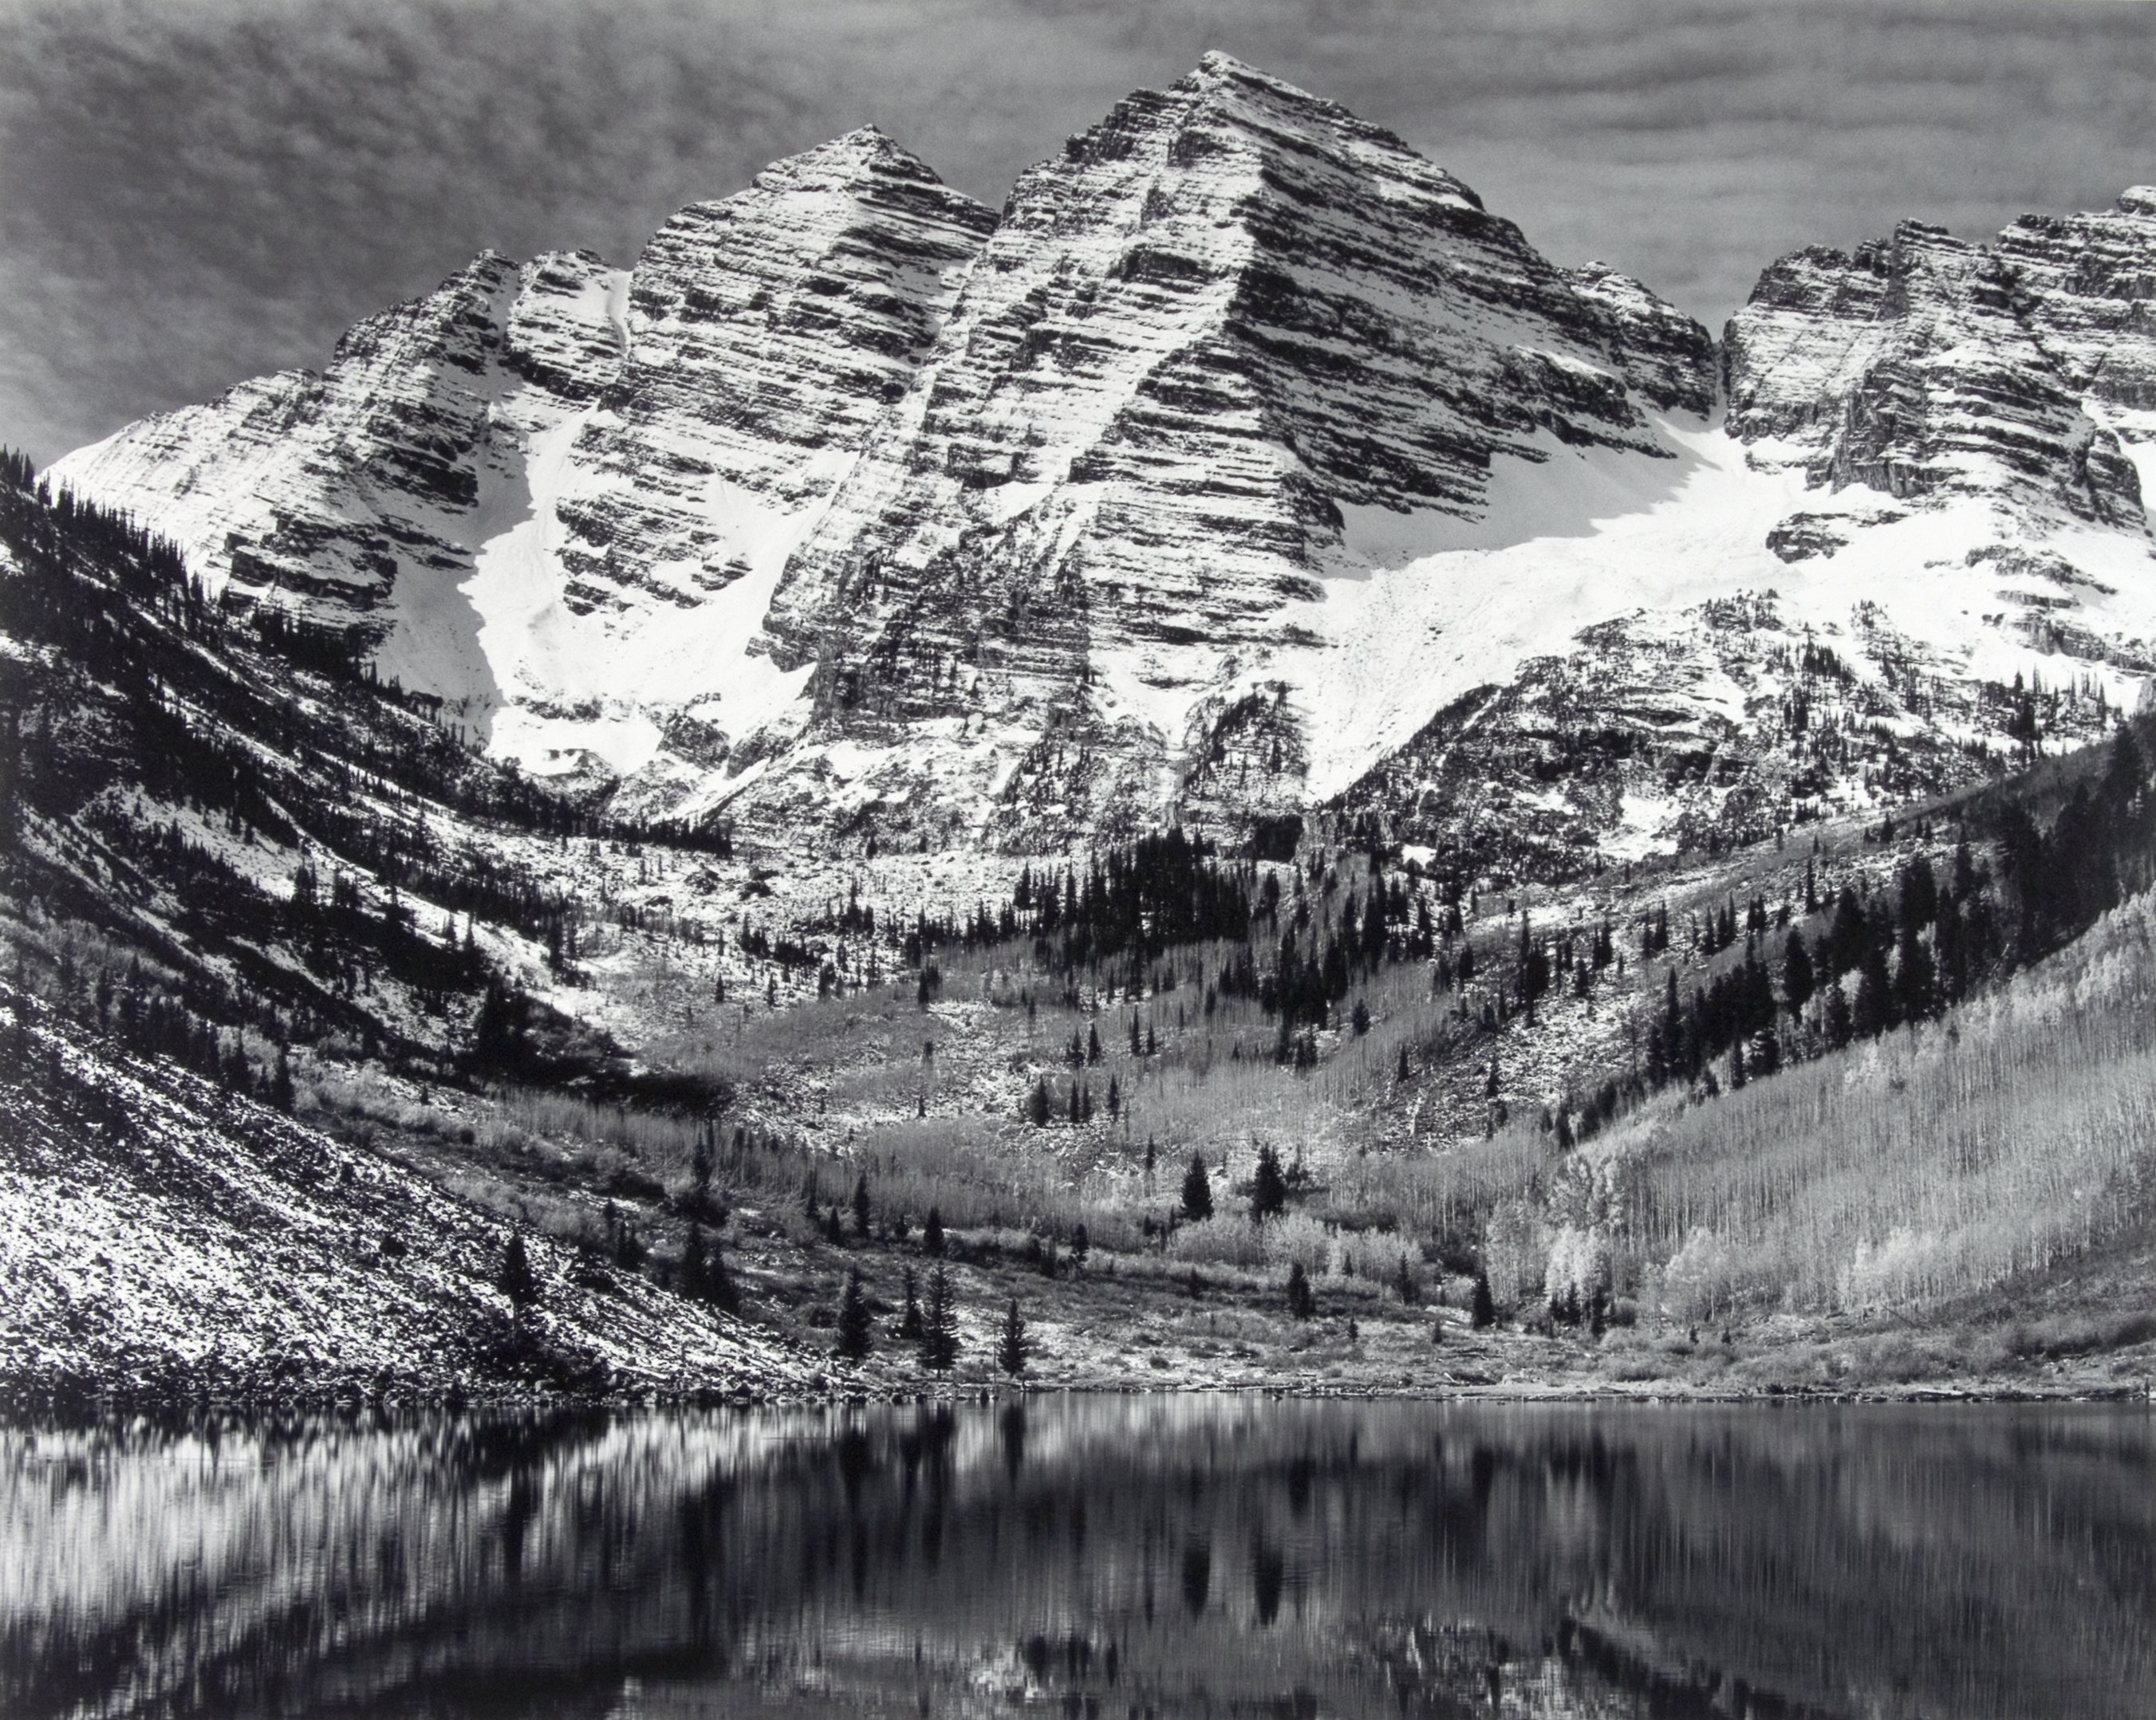 안젤 아담스 바탕 화면,산,자연 경관,물,검정색과 흰색,산맥